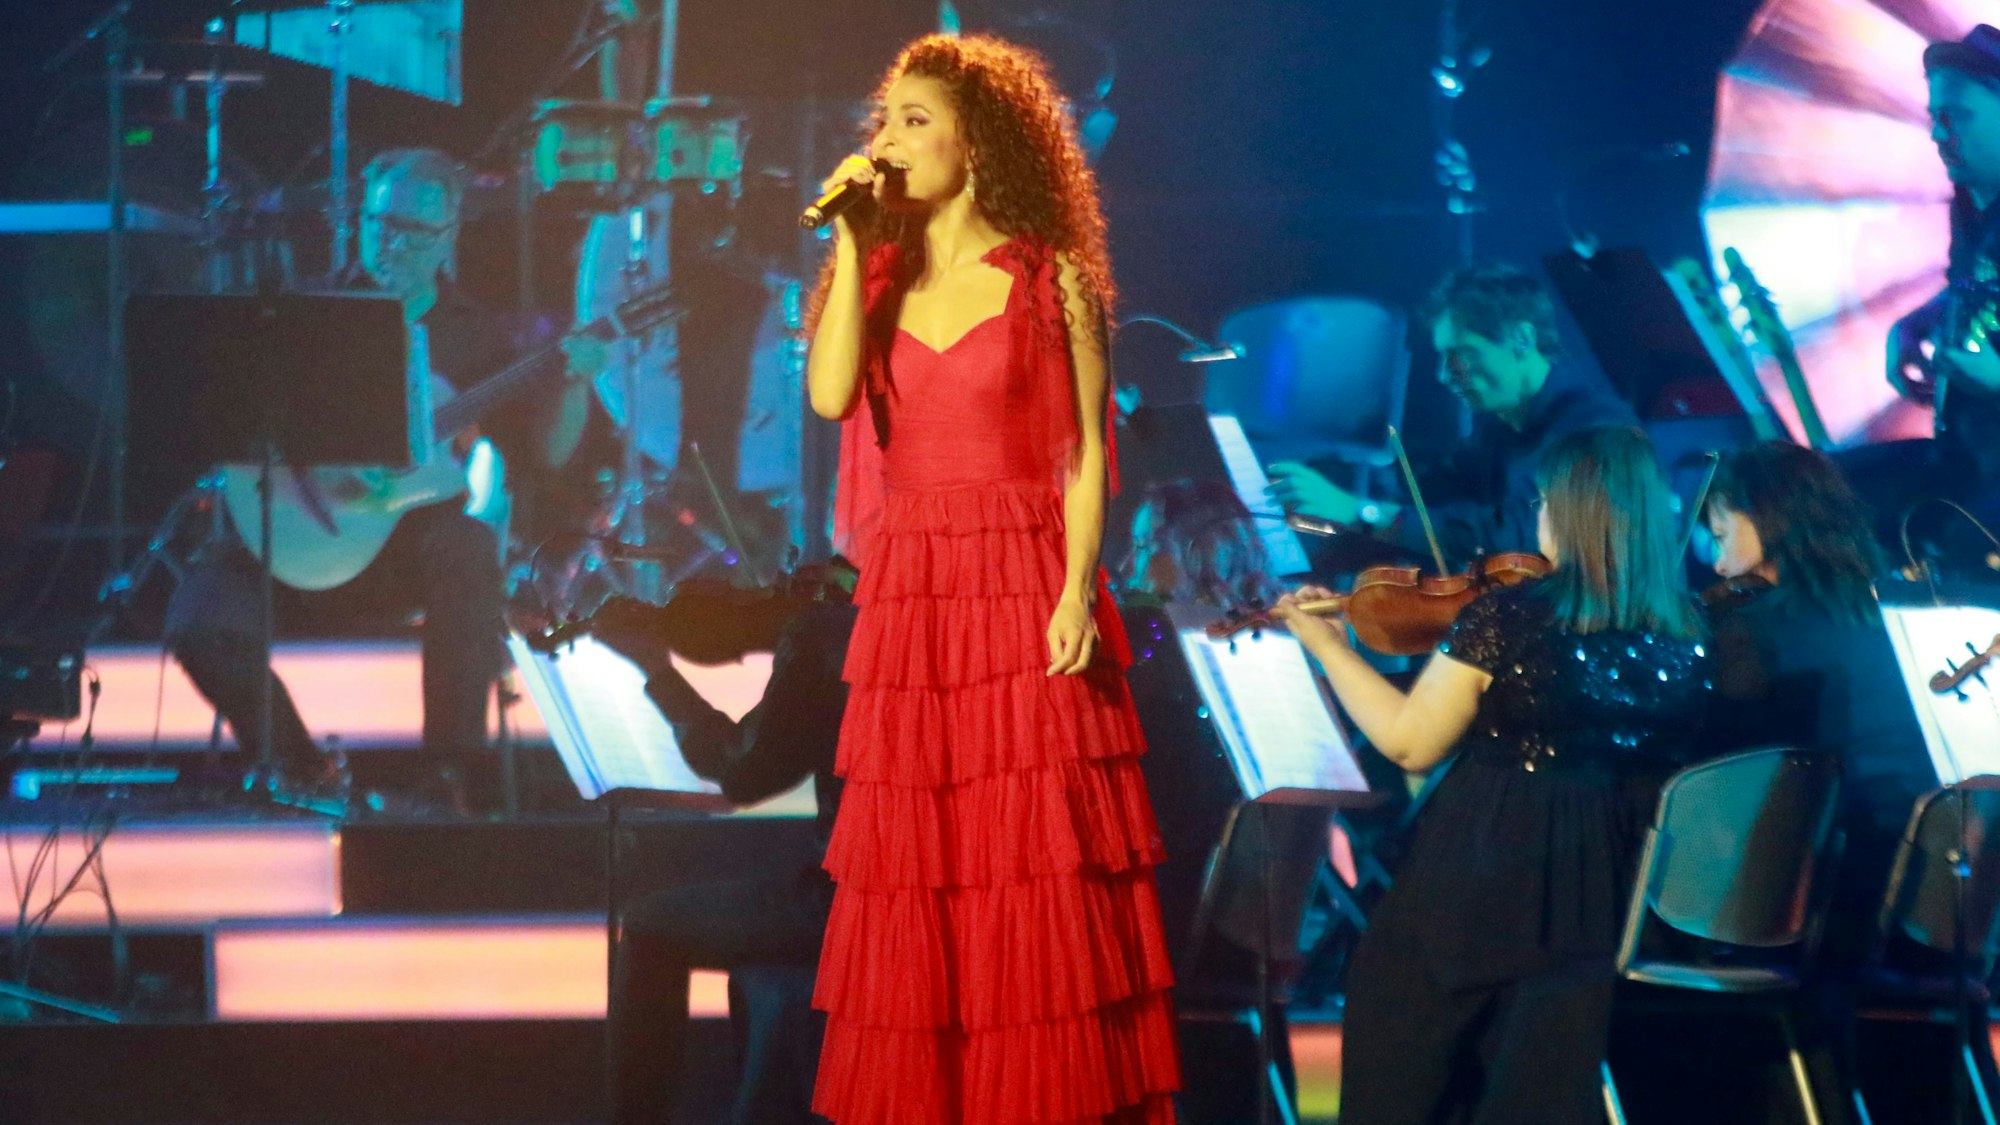 Patricia Meeden steht in einem roten Kleid auf der Bühne und singt.